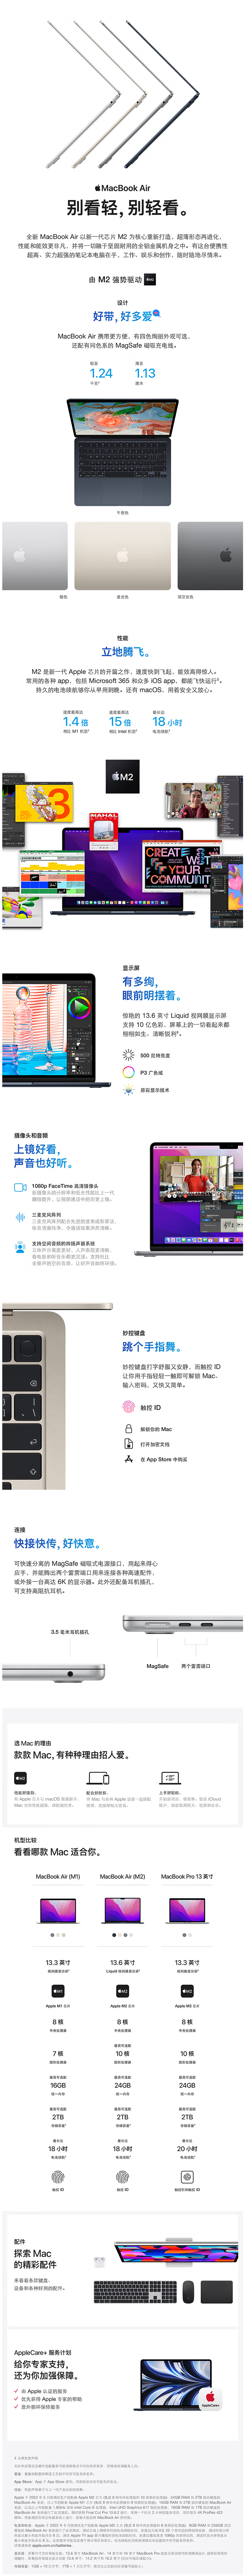 FireShot Capture 723 - 【AppleMacBook Air】Apple MacBook Air 13.6 8核M2芯片(8核图形处理器) 8G 256G SSD _ - item.jd.com.png